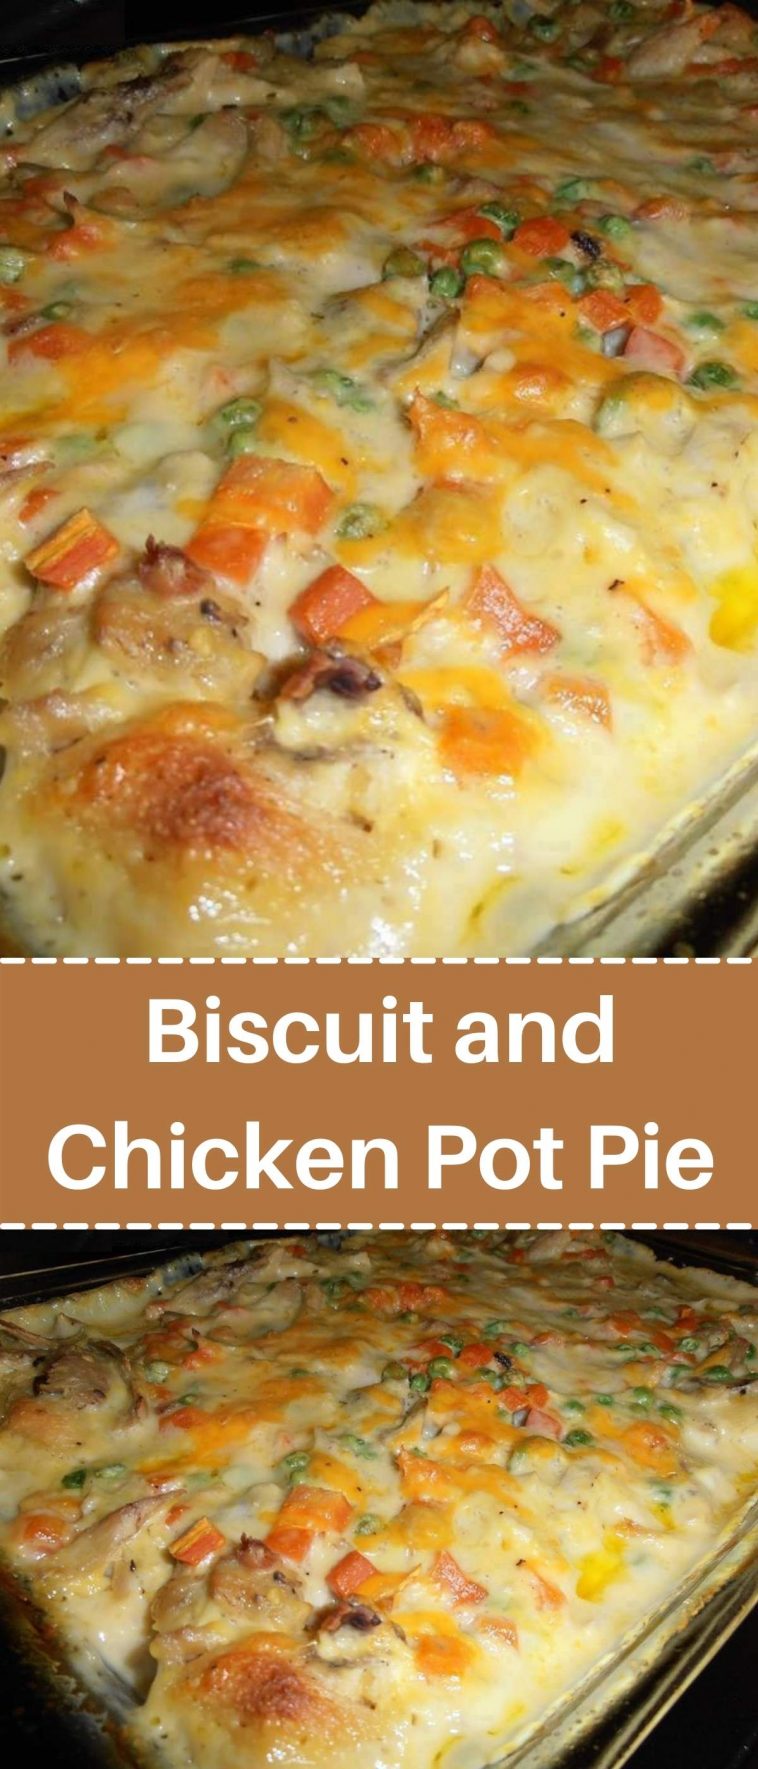 Biscuit and Chicken Pot Pie